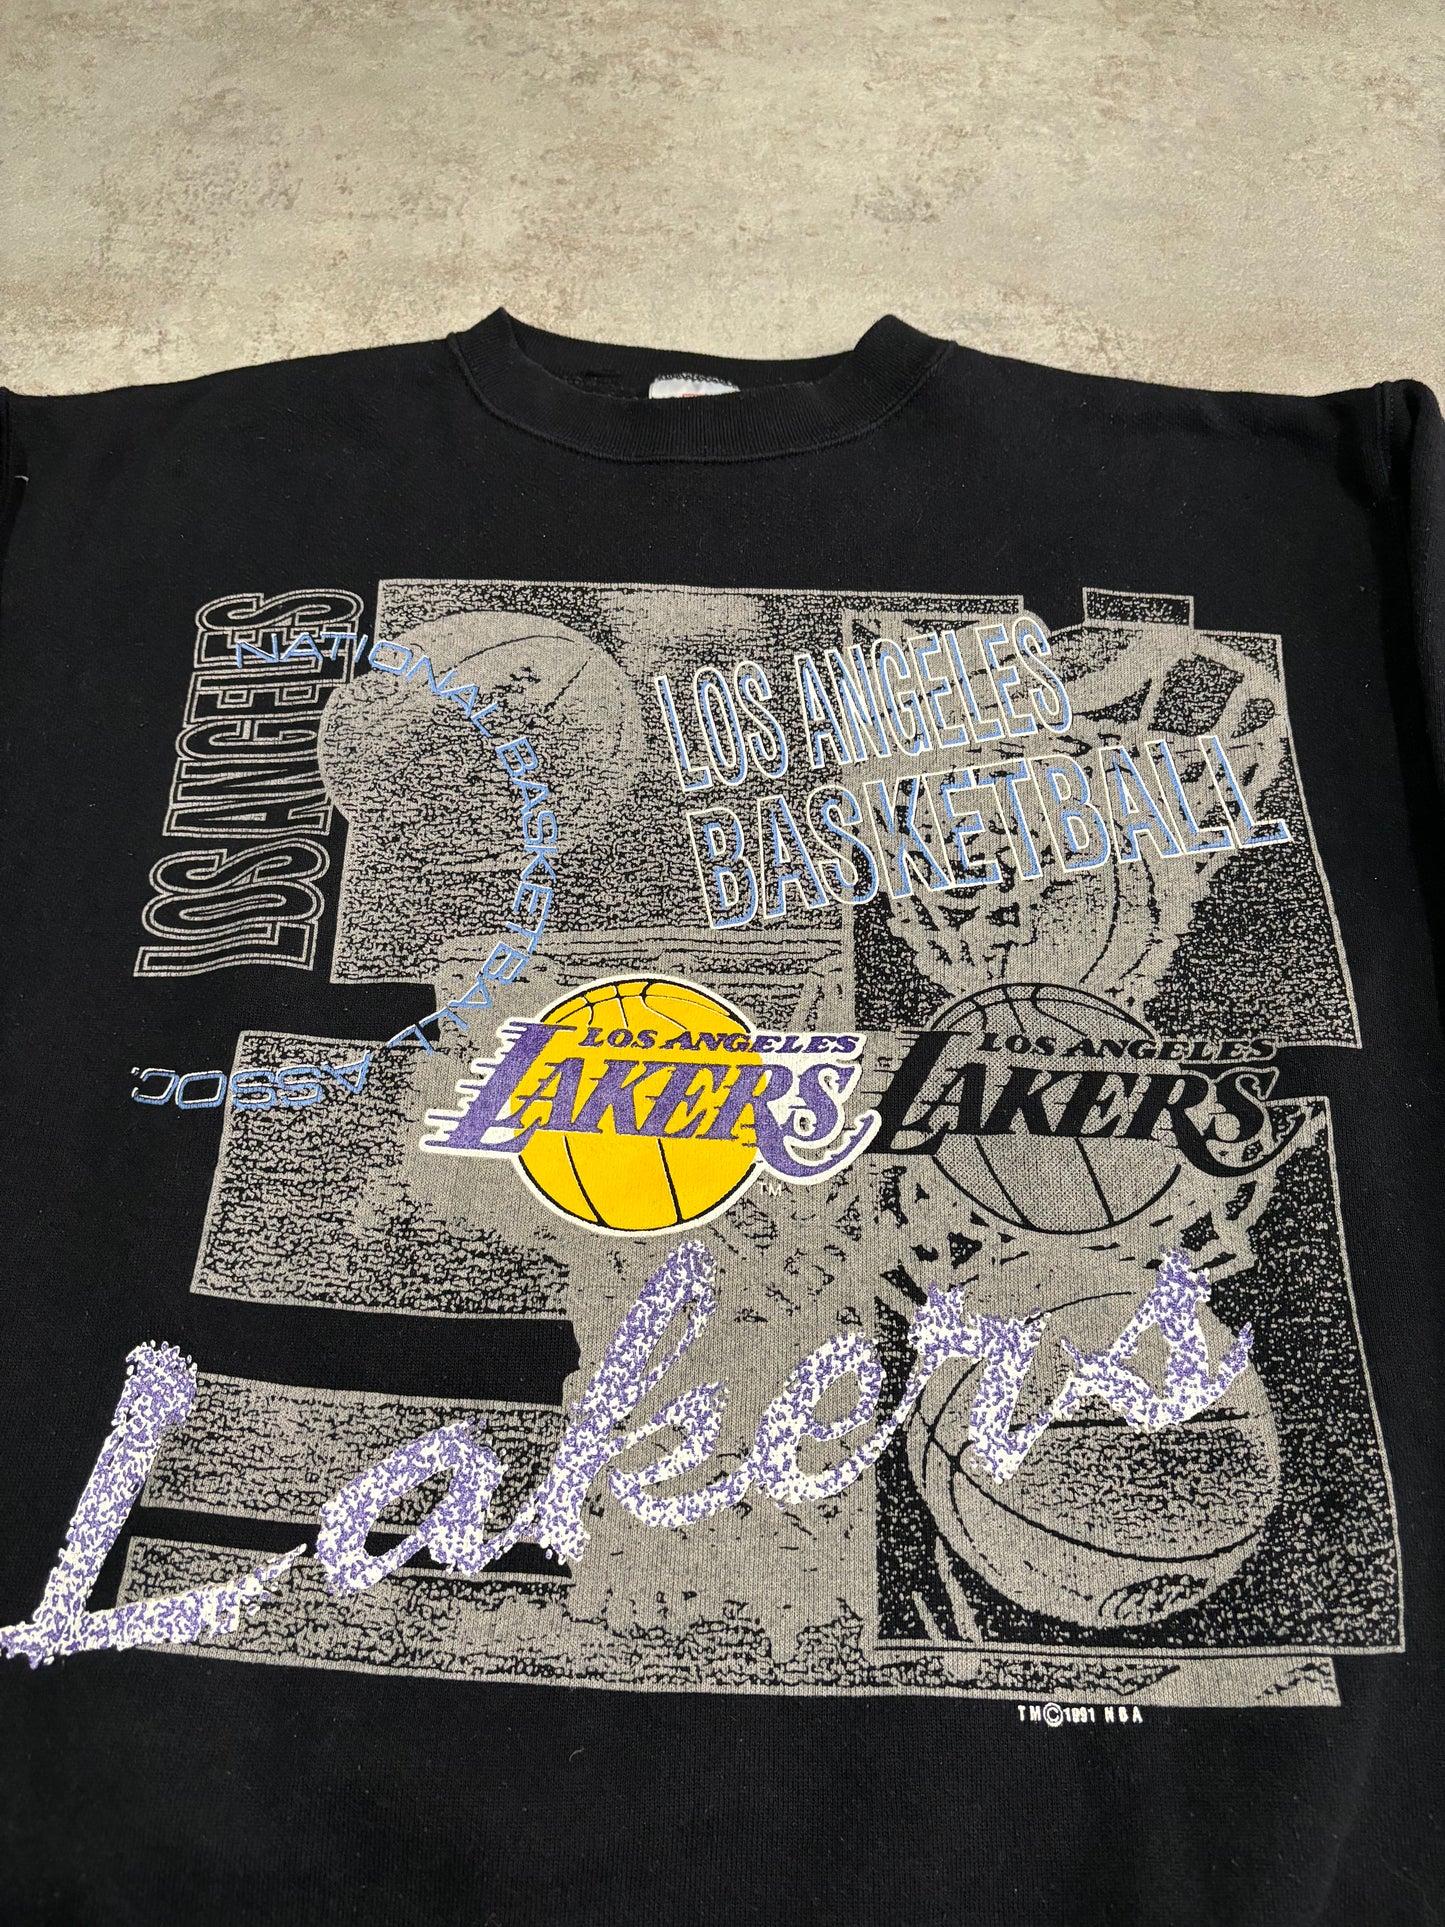 Los Angeles Lakers 1991 Licensed NBA Vintage Sweatshirt - M